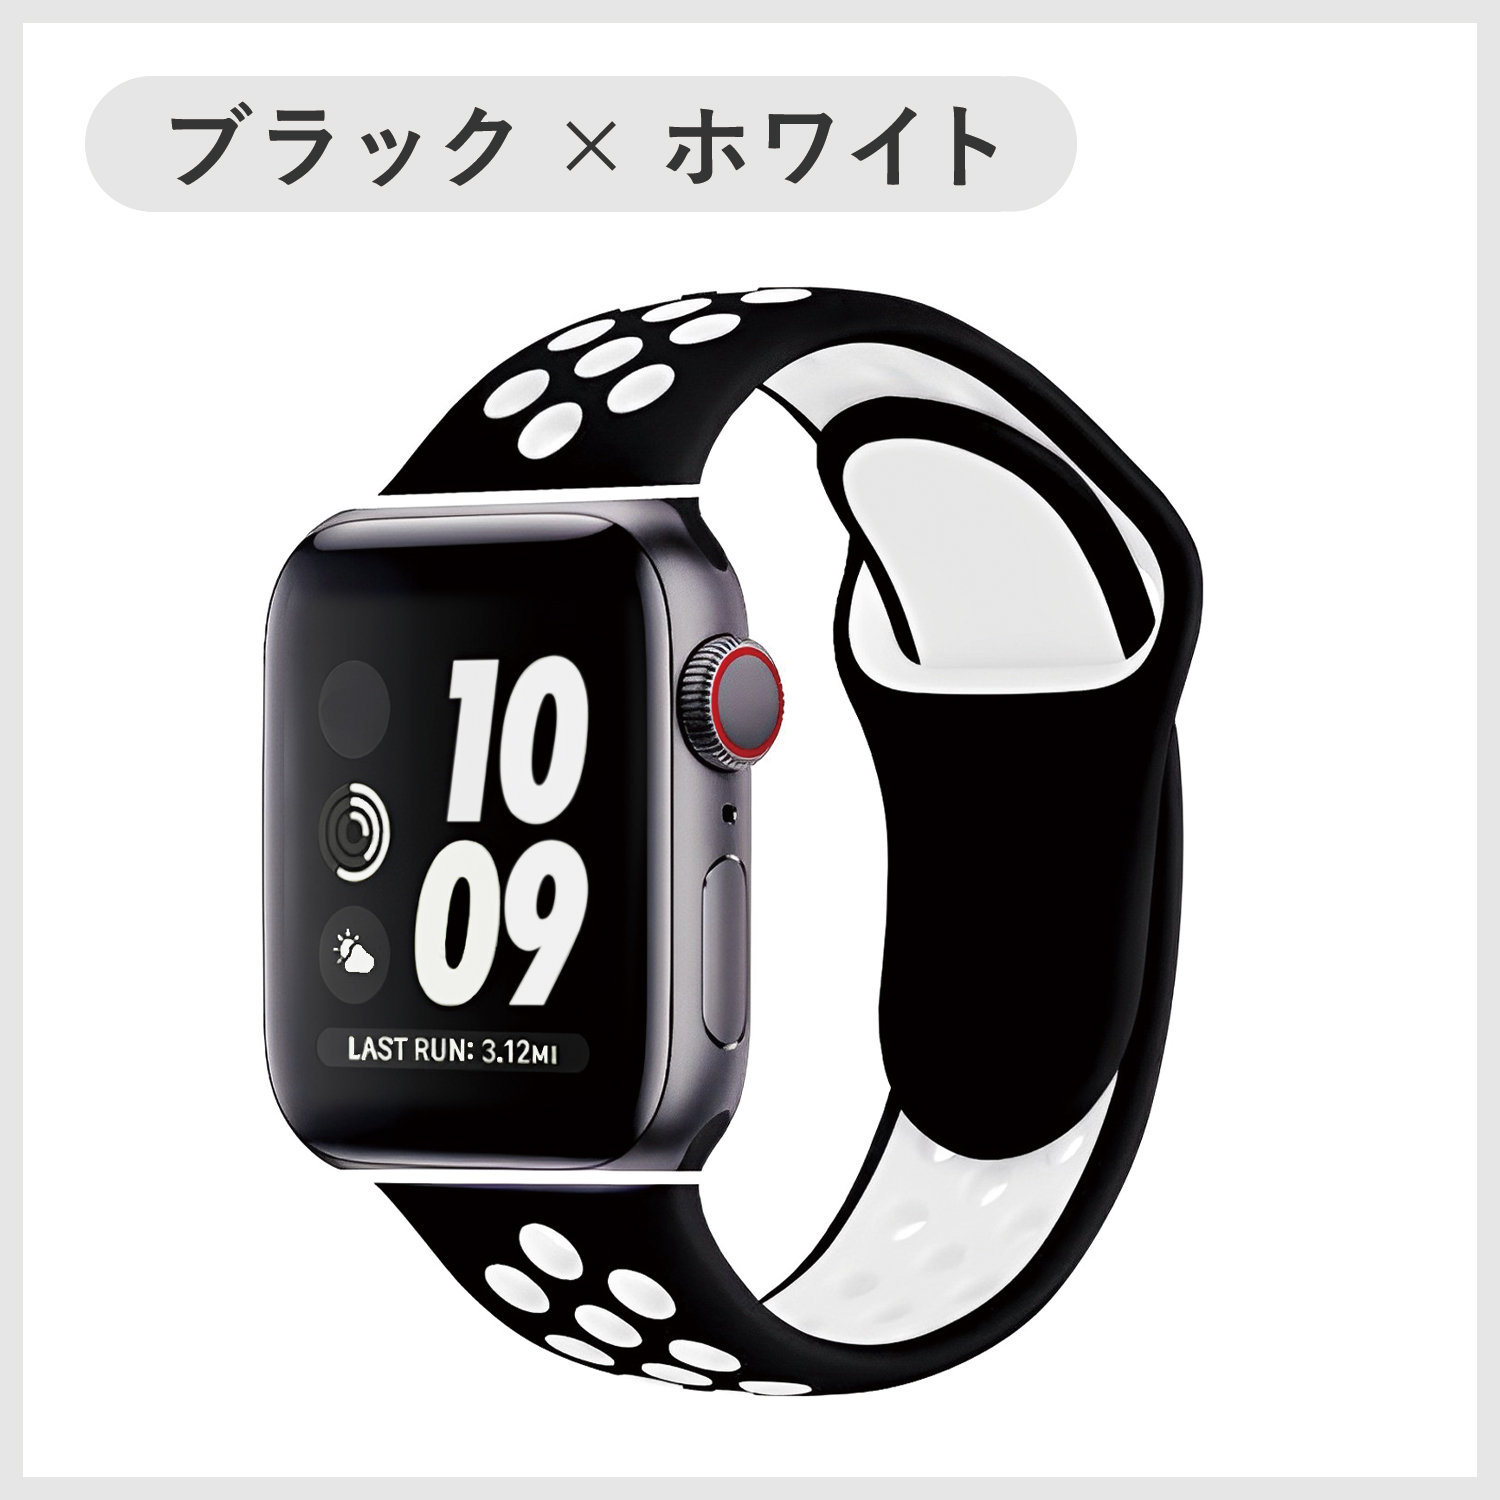 お得低価Applewatch SE black スポーツバンド GPSモデル美品 Apple Watch本体